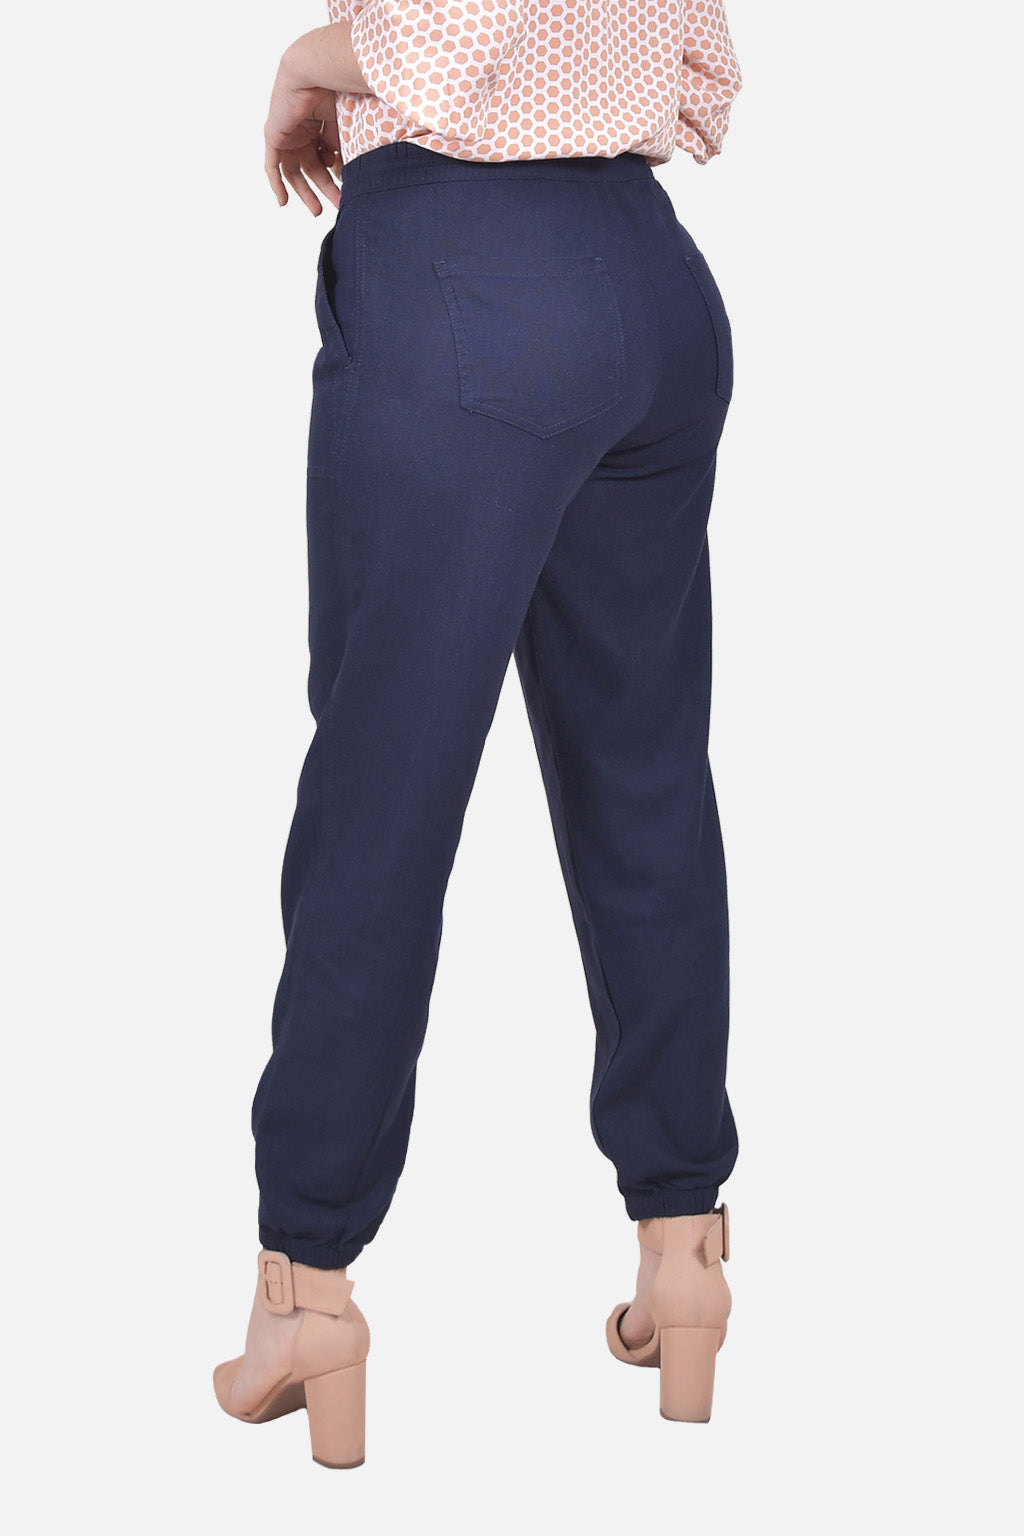 Pantalon Benicio Azul Navy